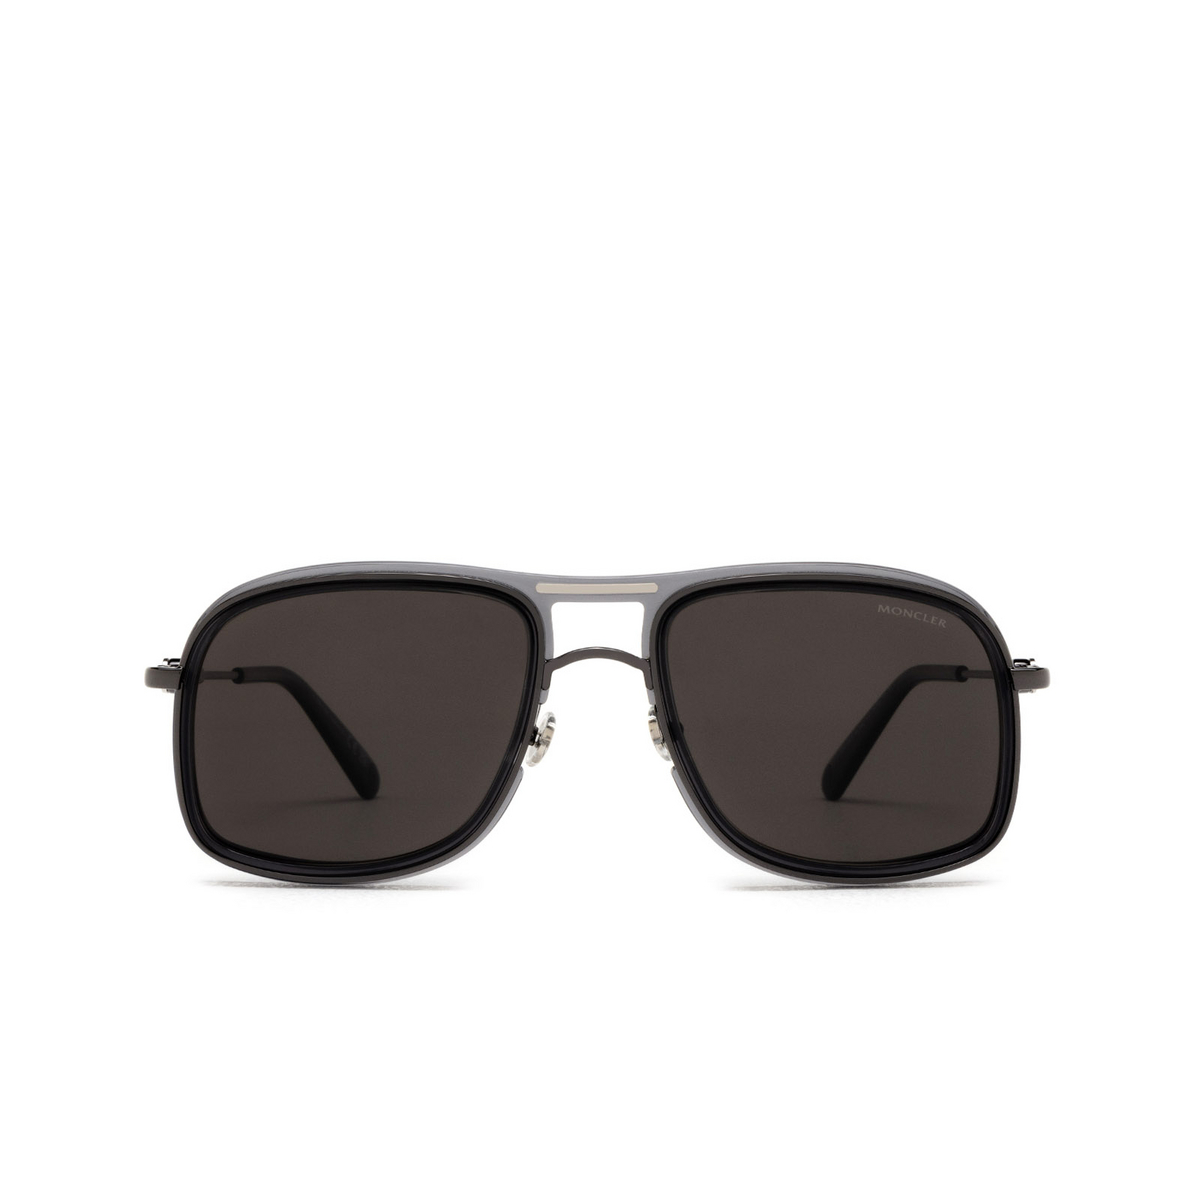 Moncler KONTOUR Sunglasses 01D Shiny Black - front view